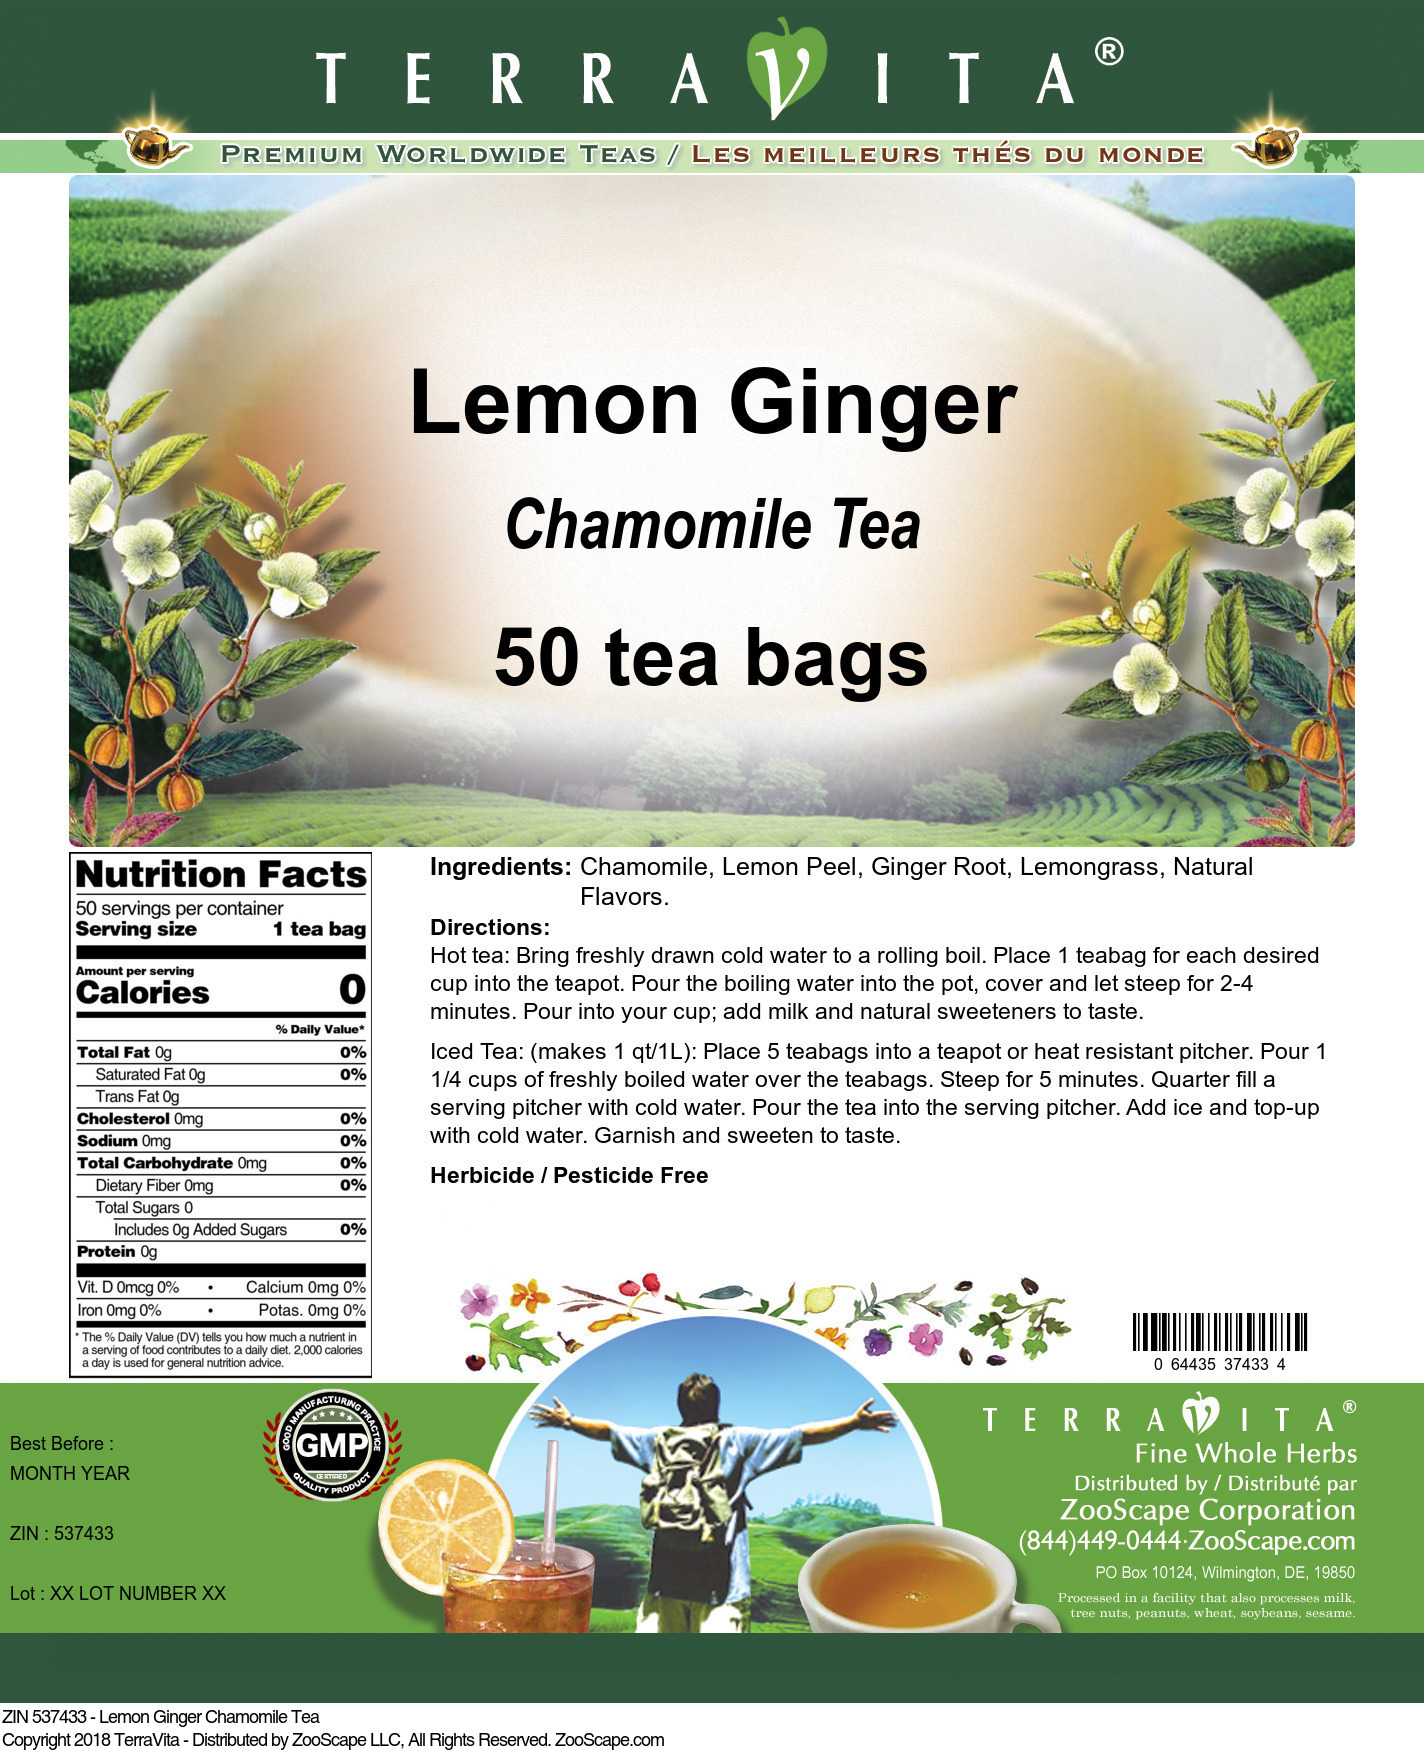 Lemon Ginger Chamomile Tea - Label